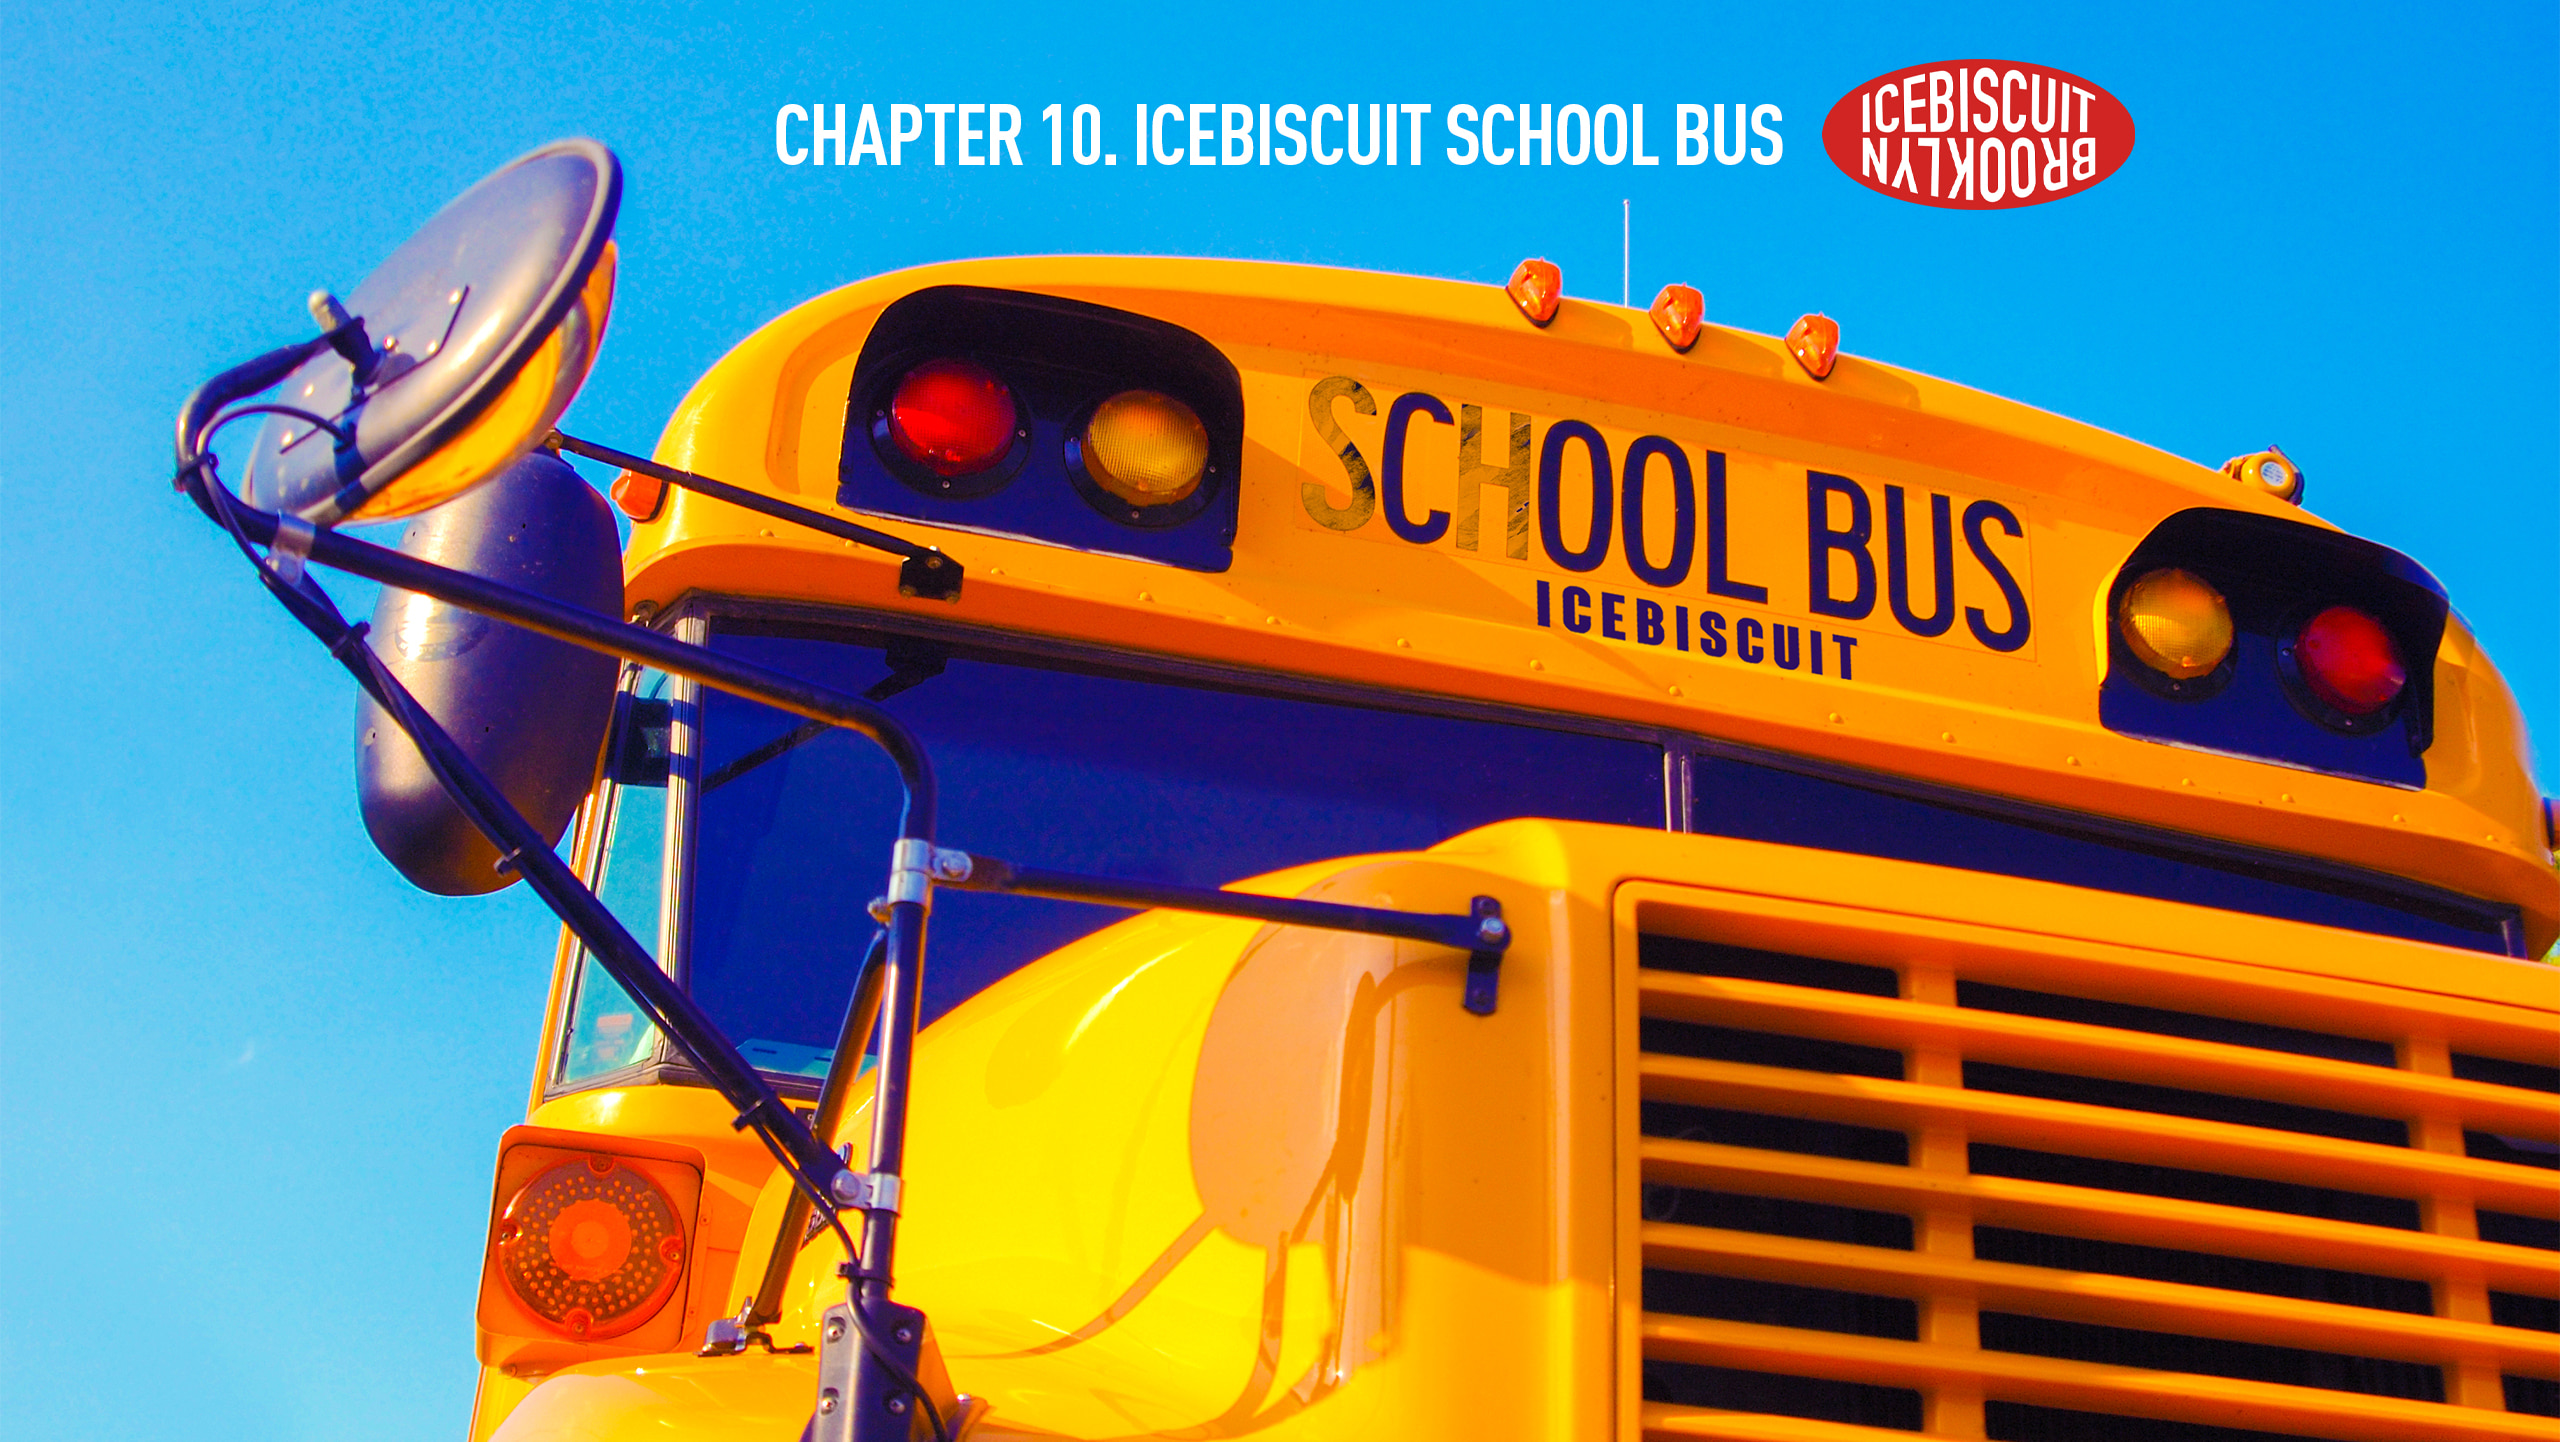 CHAPTER 10. ICEBISCUIT SCHOOL BUS